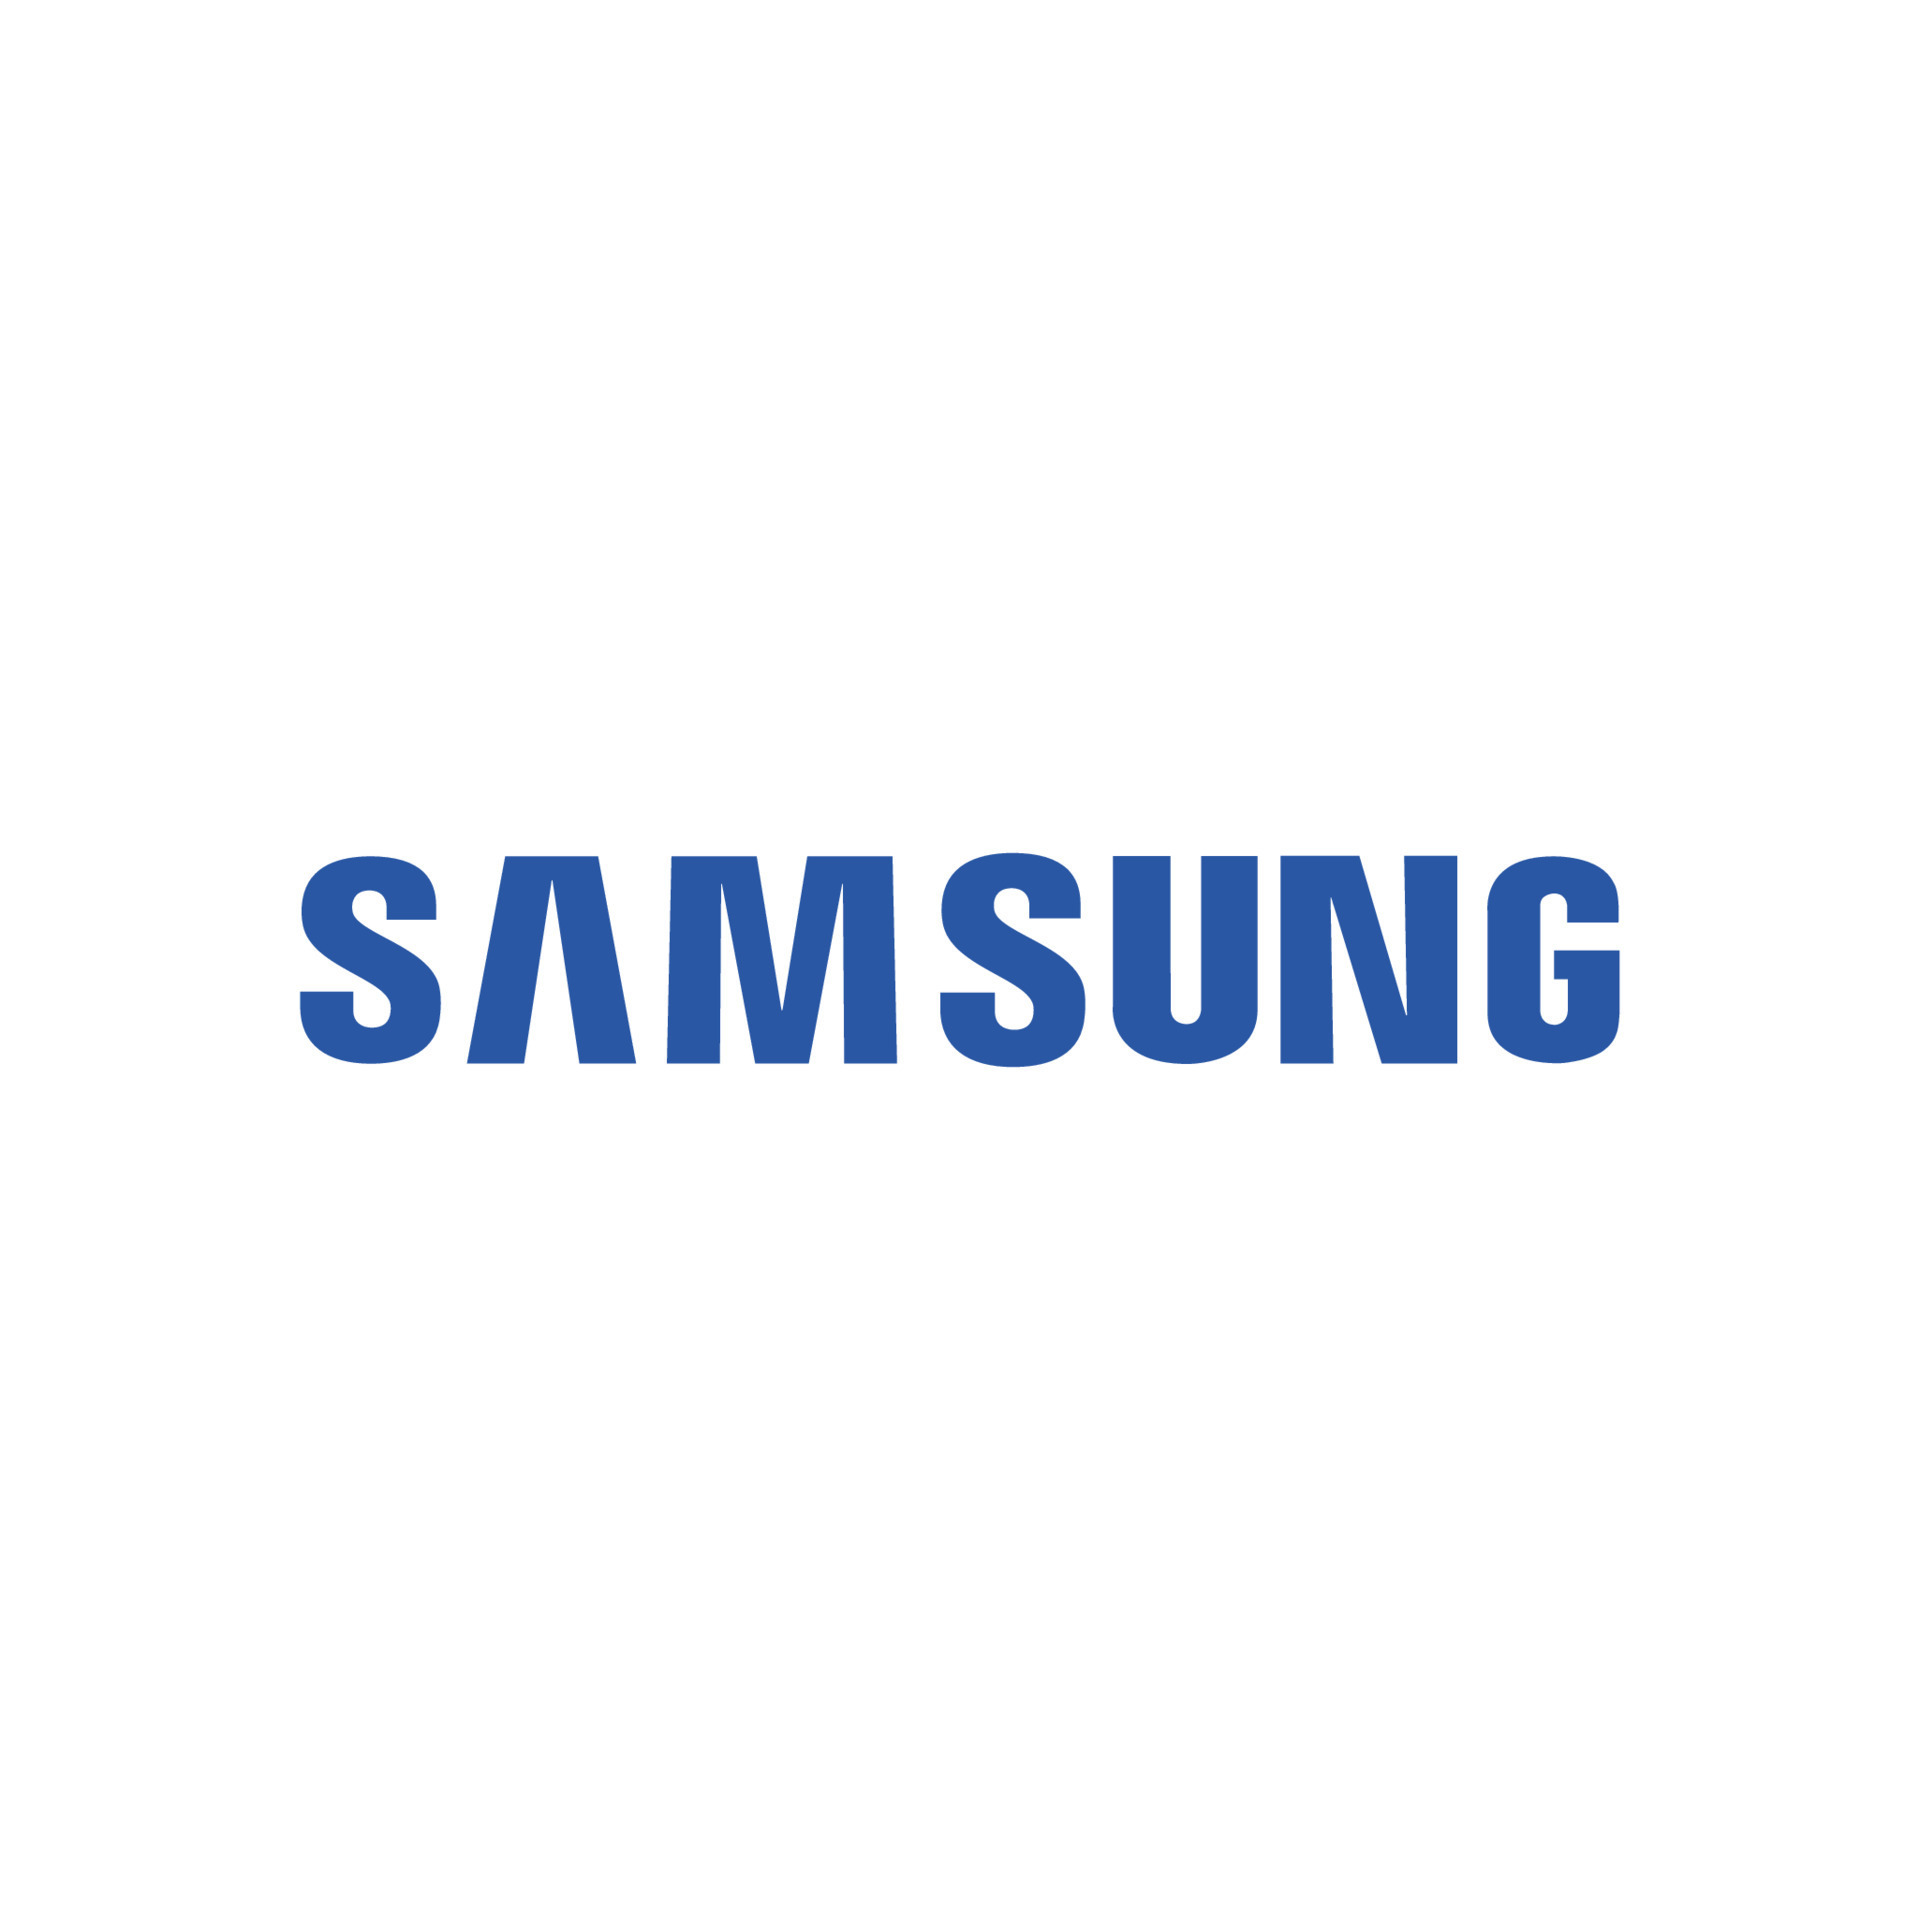 Samsung logo vector, Samsung icon free vector 20336197 Vector Art ...